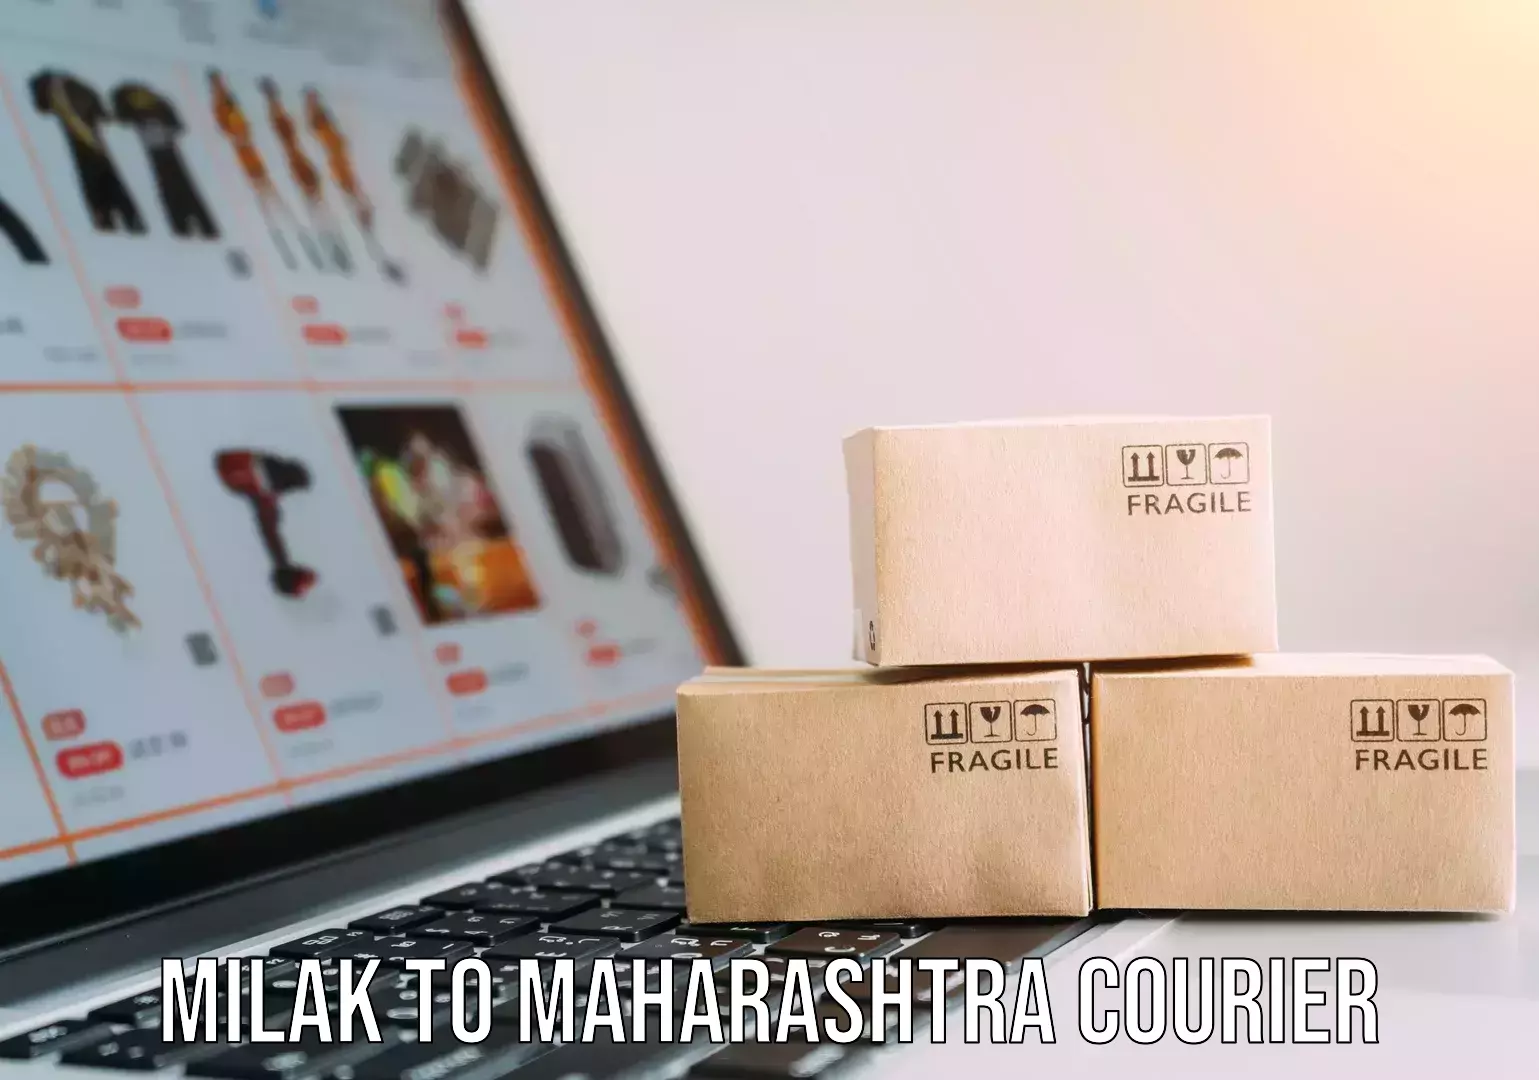 Furniture moving experts Milak to Maharashtra